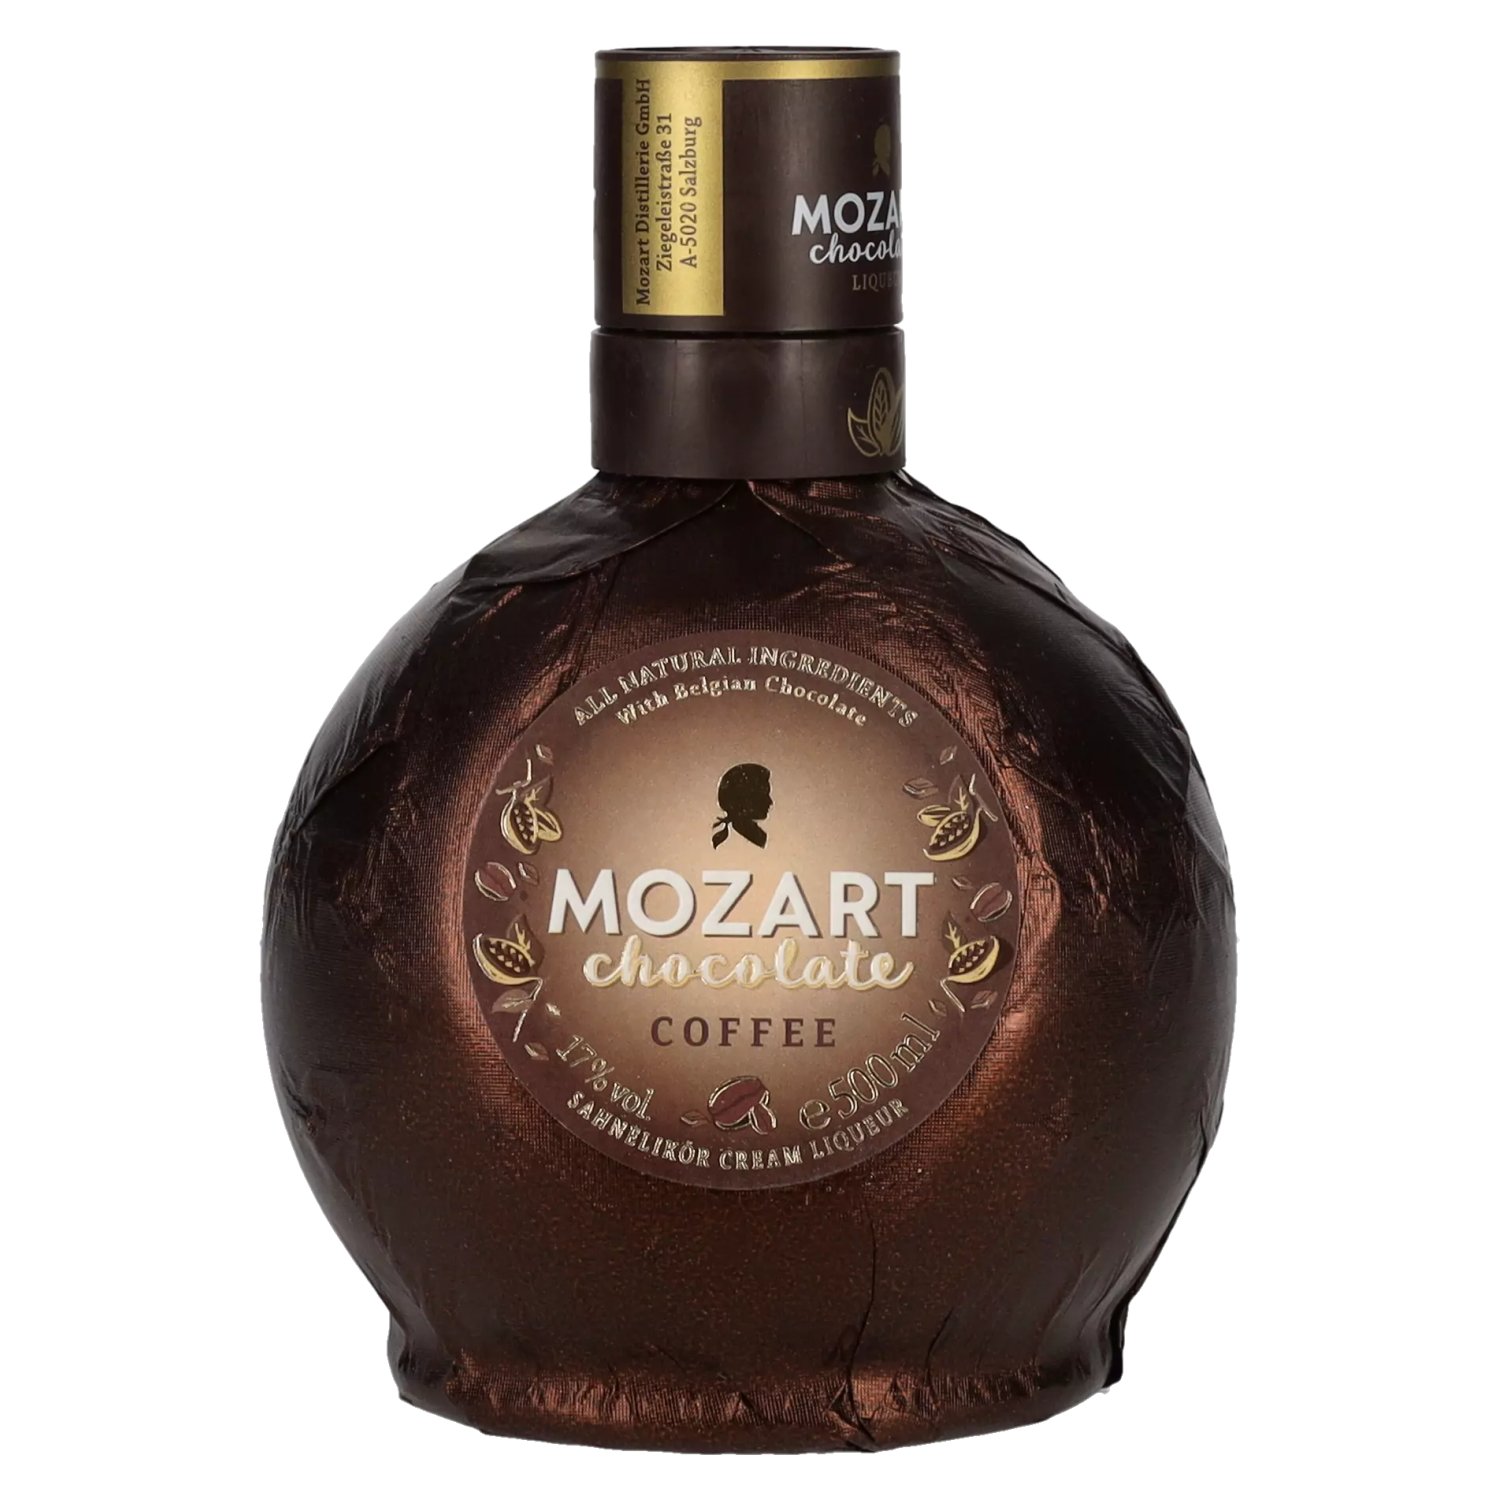 17% delicando Mozart - Coffee 0,5l Chocolate Vol.